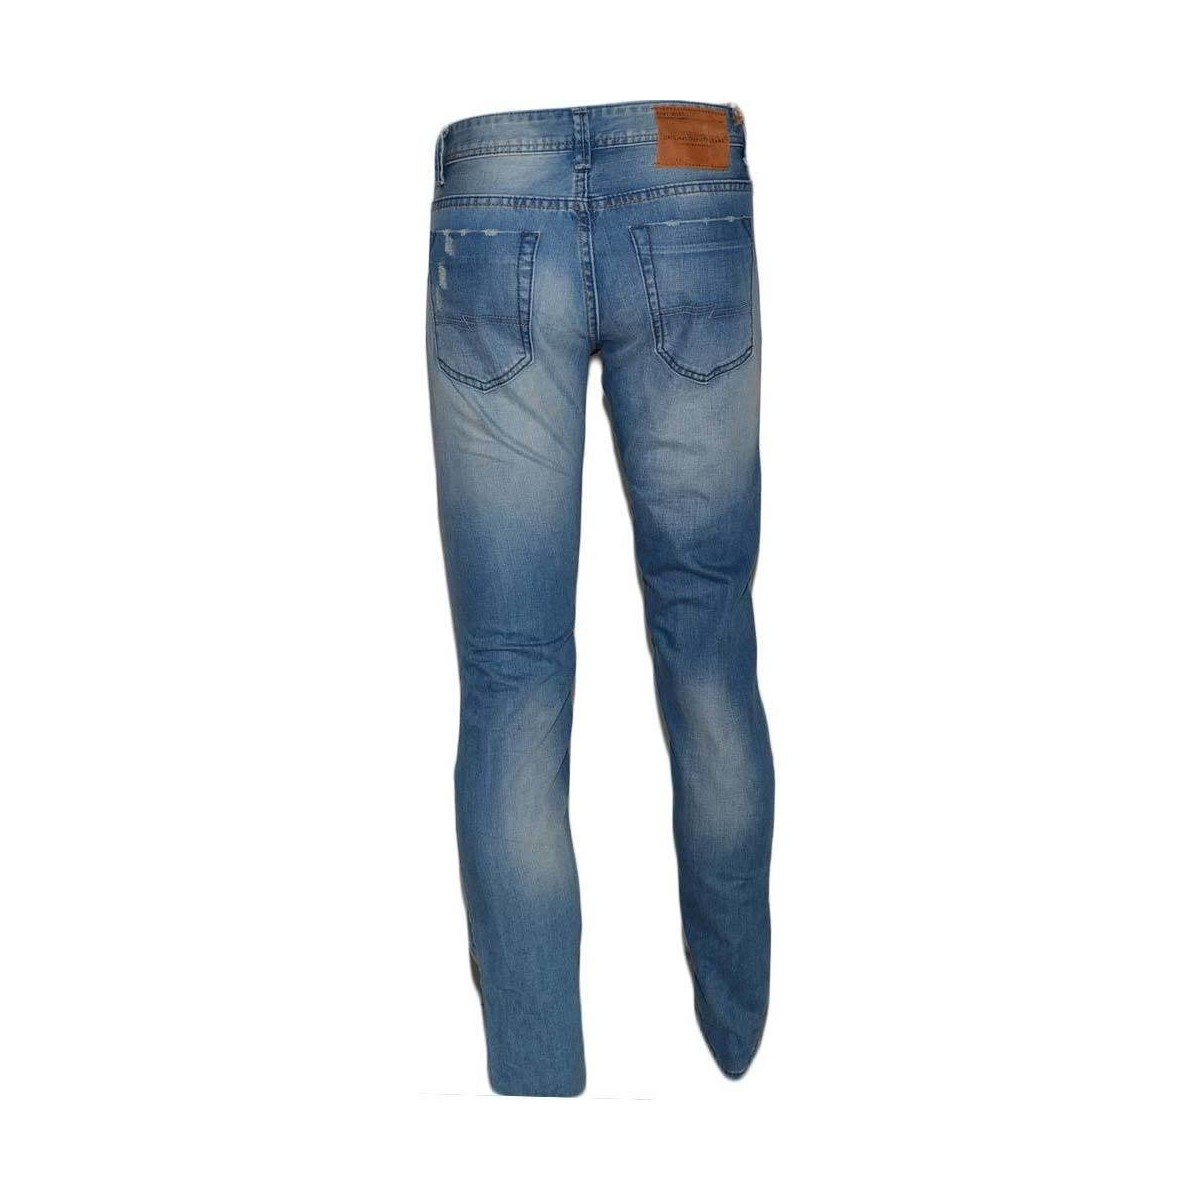 Abbigliamento Uomo Jeans Malu Shoes Pantalone Jeans Uomo Denim Rotture Mod Jeans Effetto Sfumato Ci Blu